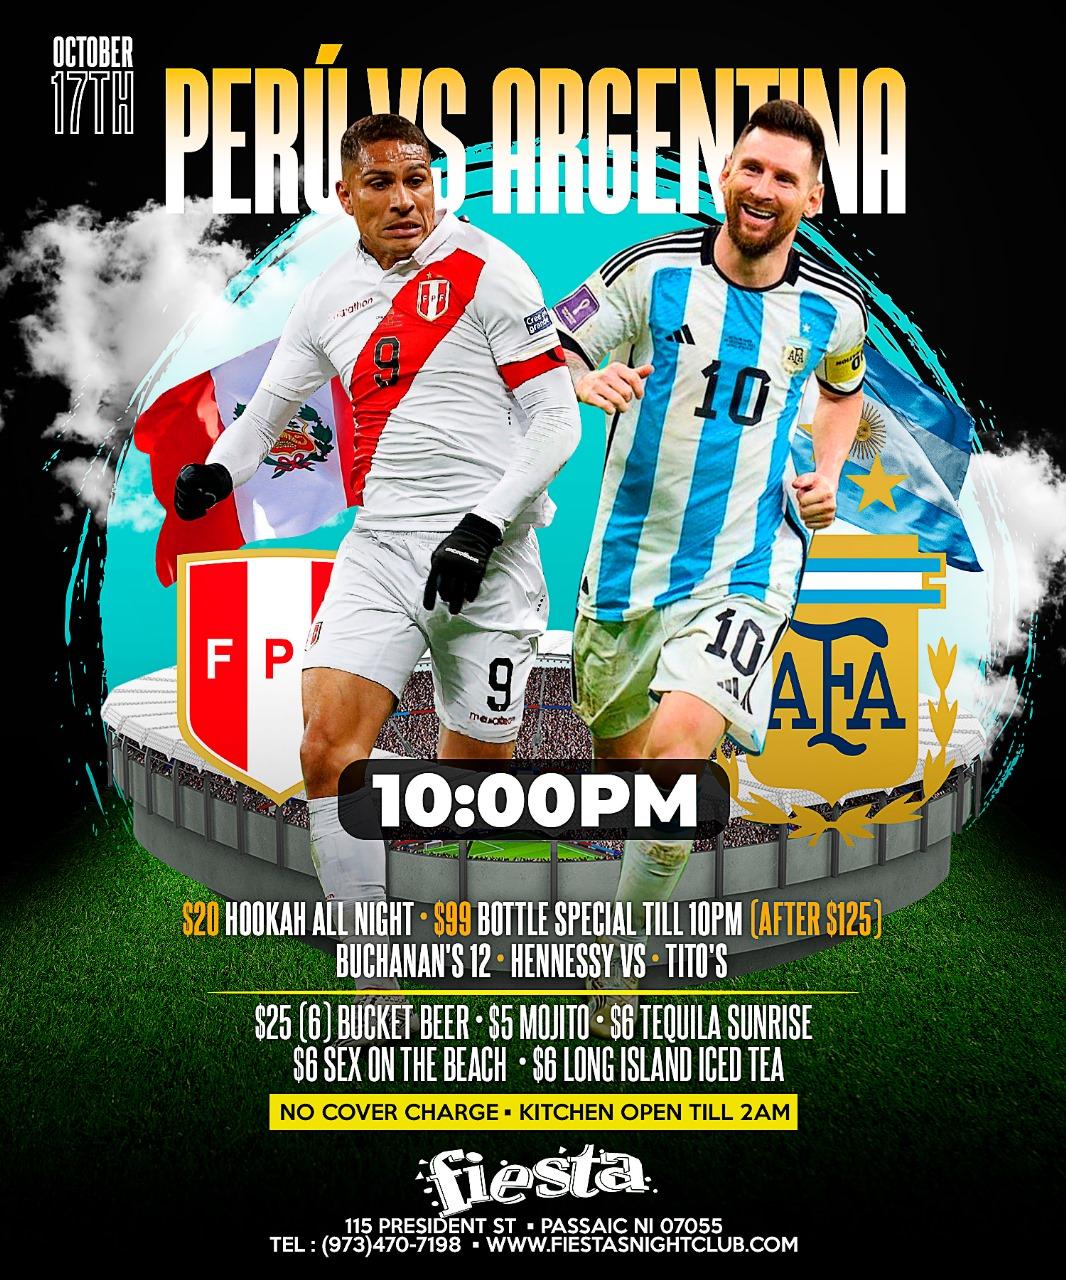 PERU VS ARGENTINA Tickets BoletosExpress